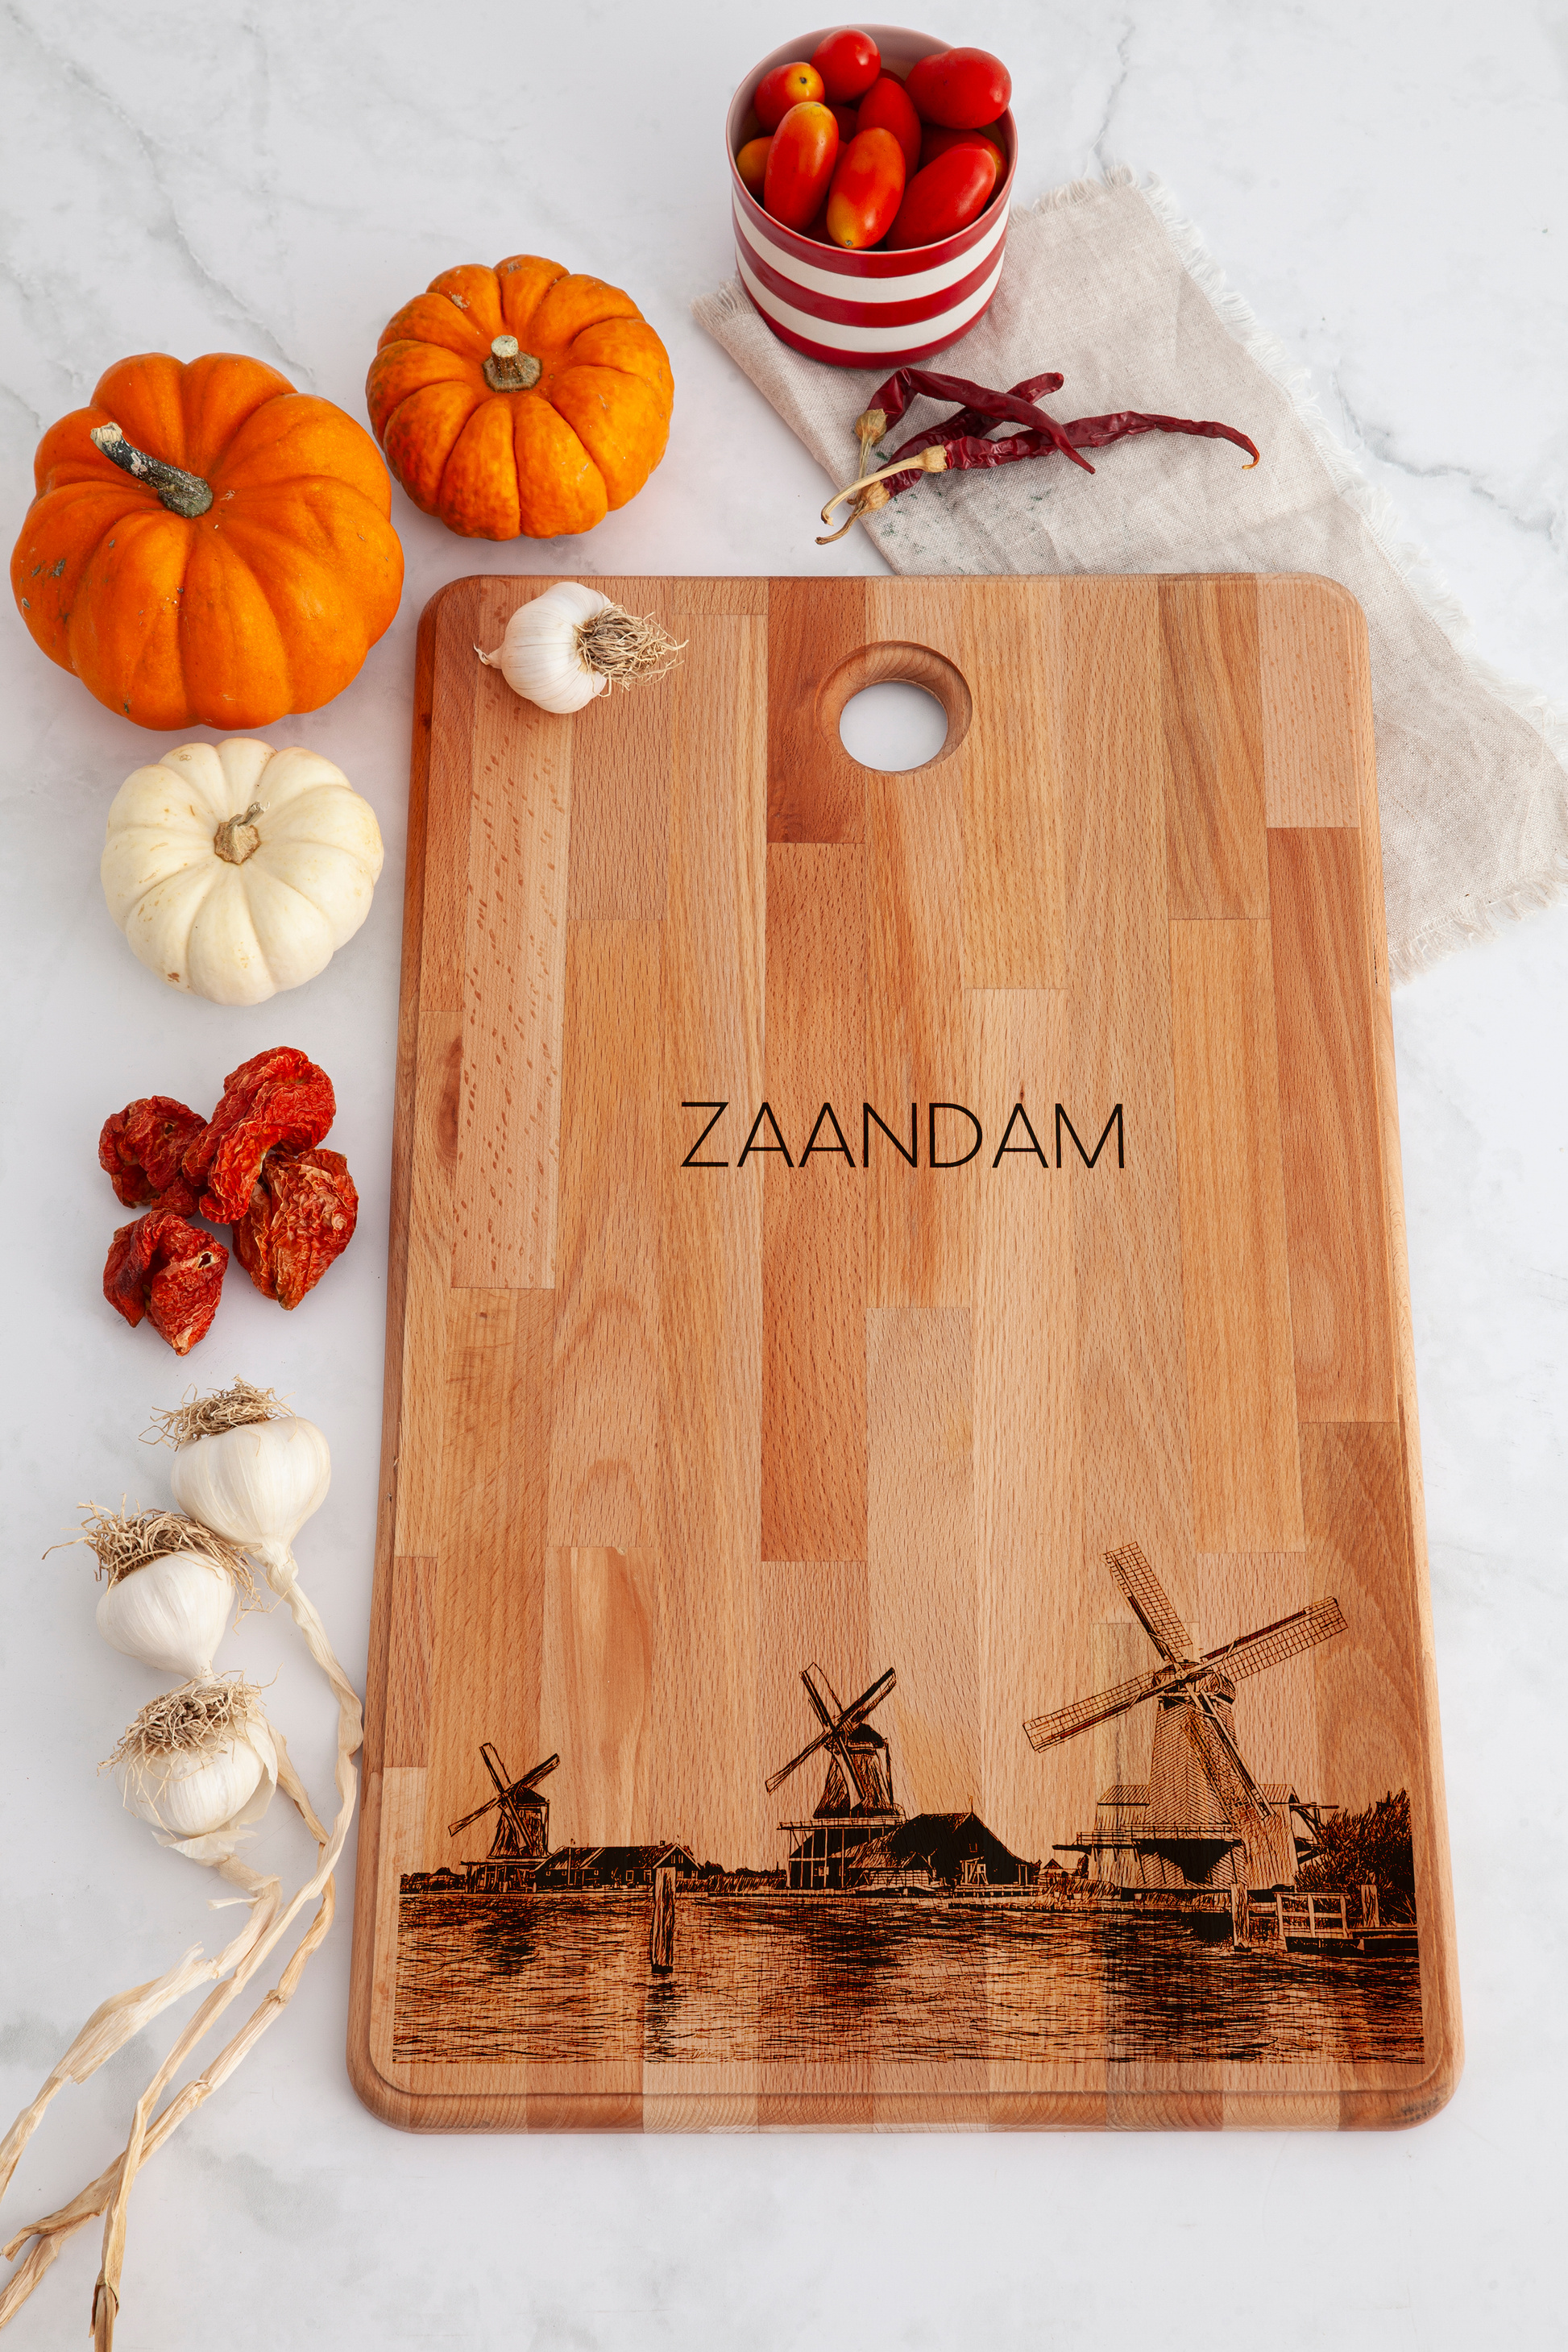 Zaandam, Zaanse Schans, cutting board, on countertop